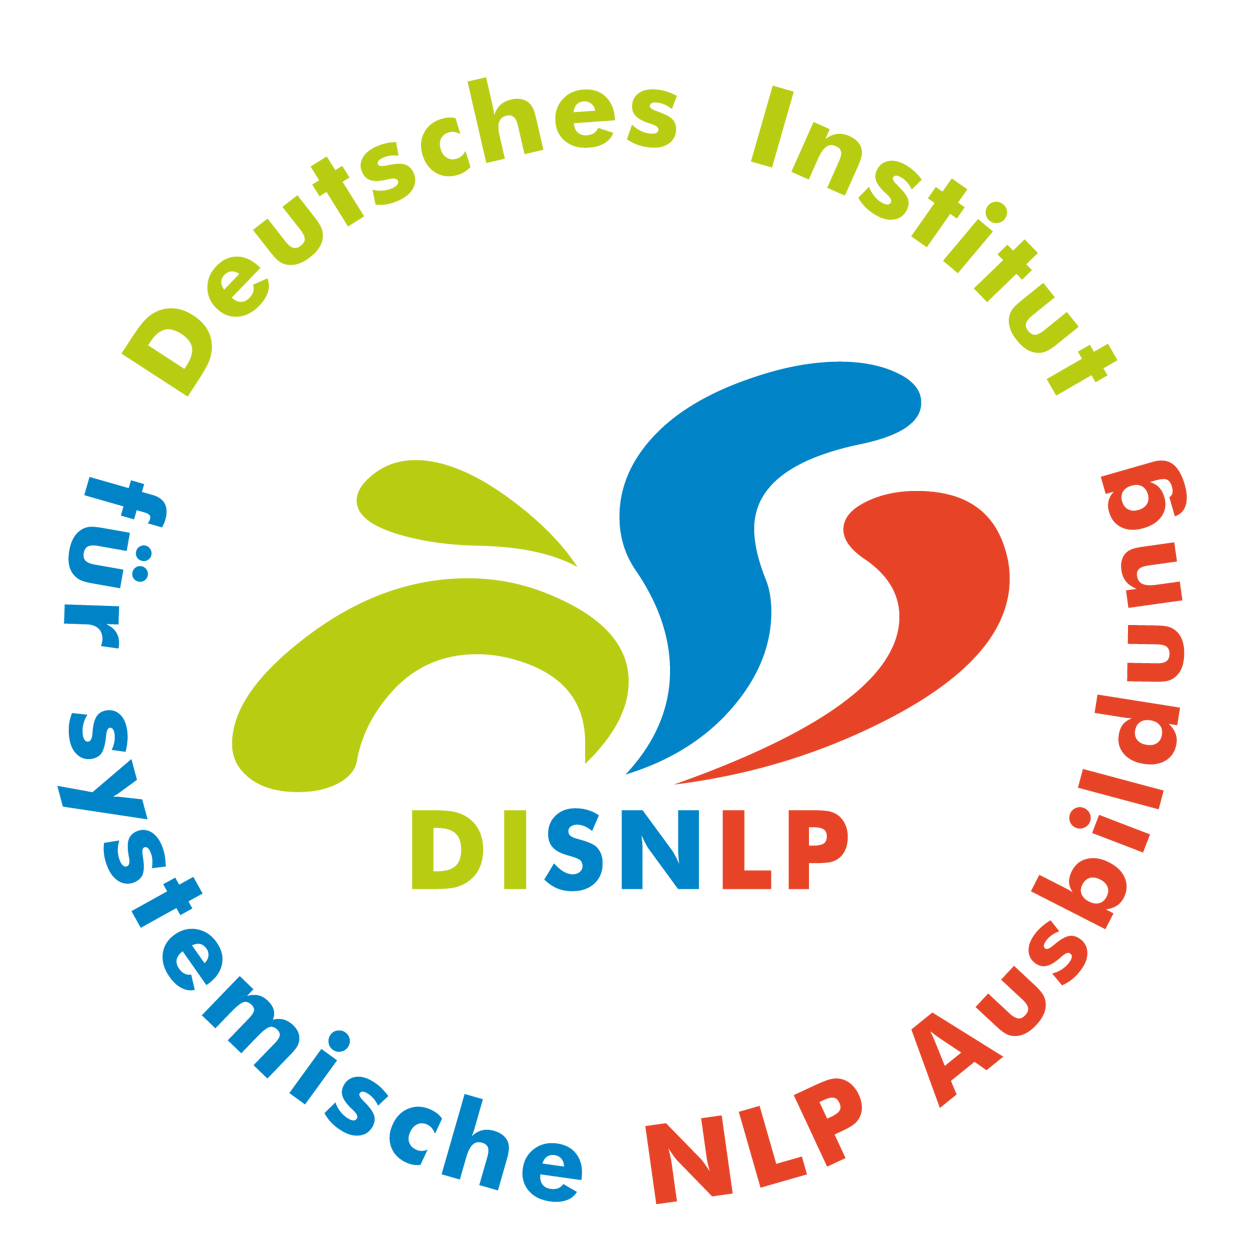 Seminar Selbstbewusstsein, Selbstvertrauen, Selbstwert, Selbstsicherheit stärken Bayreuth Landkreis mit NLP Coaching Kurs für mehr Selbstbewusstsein